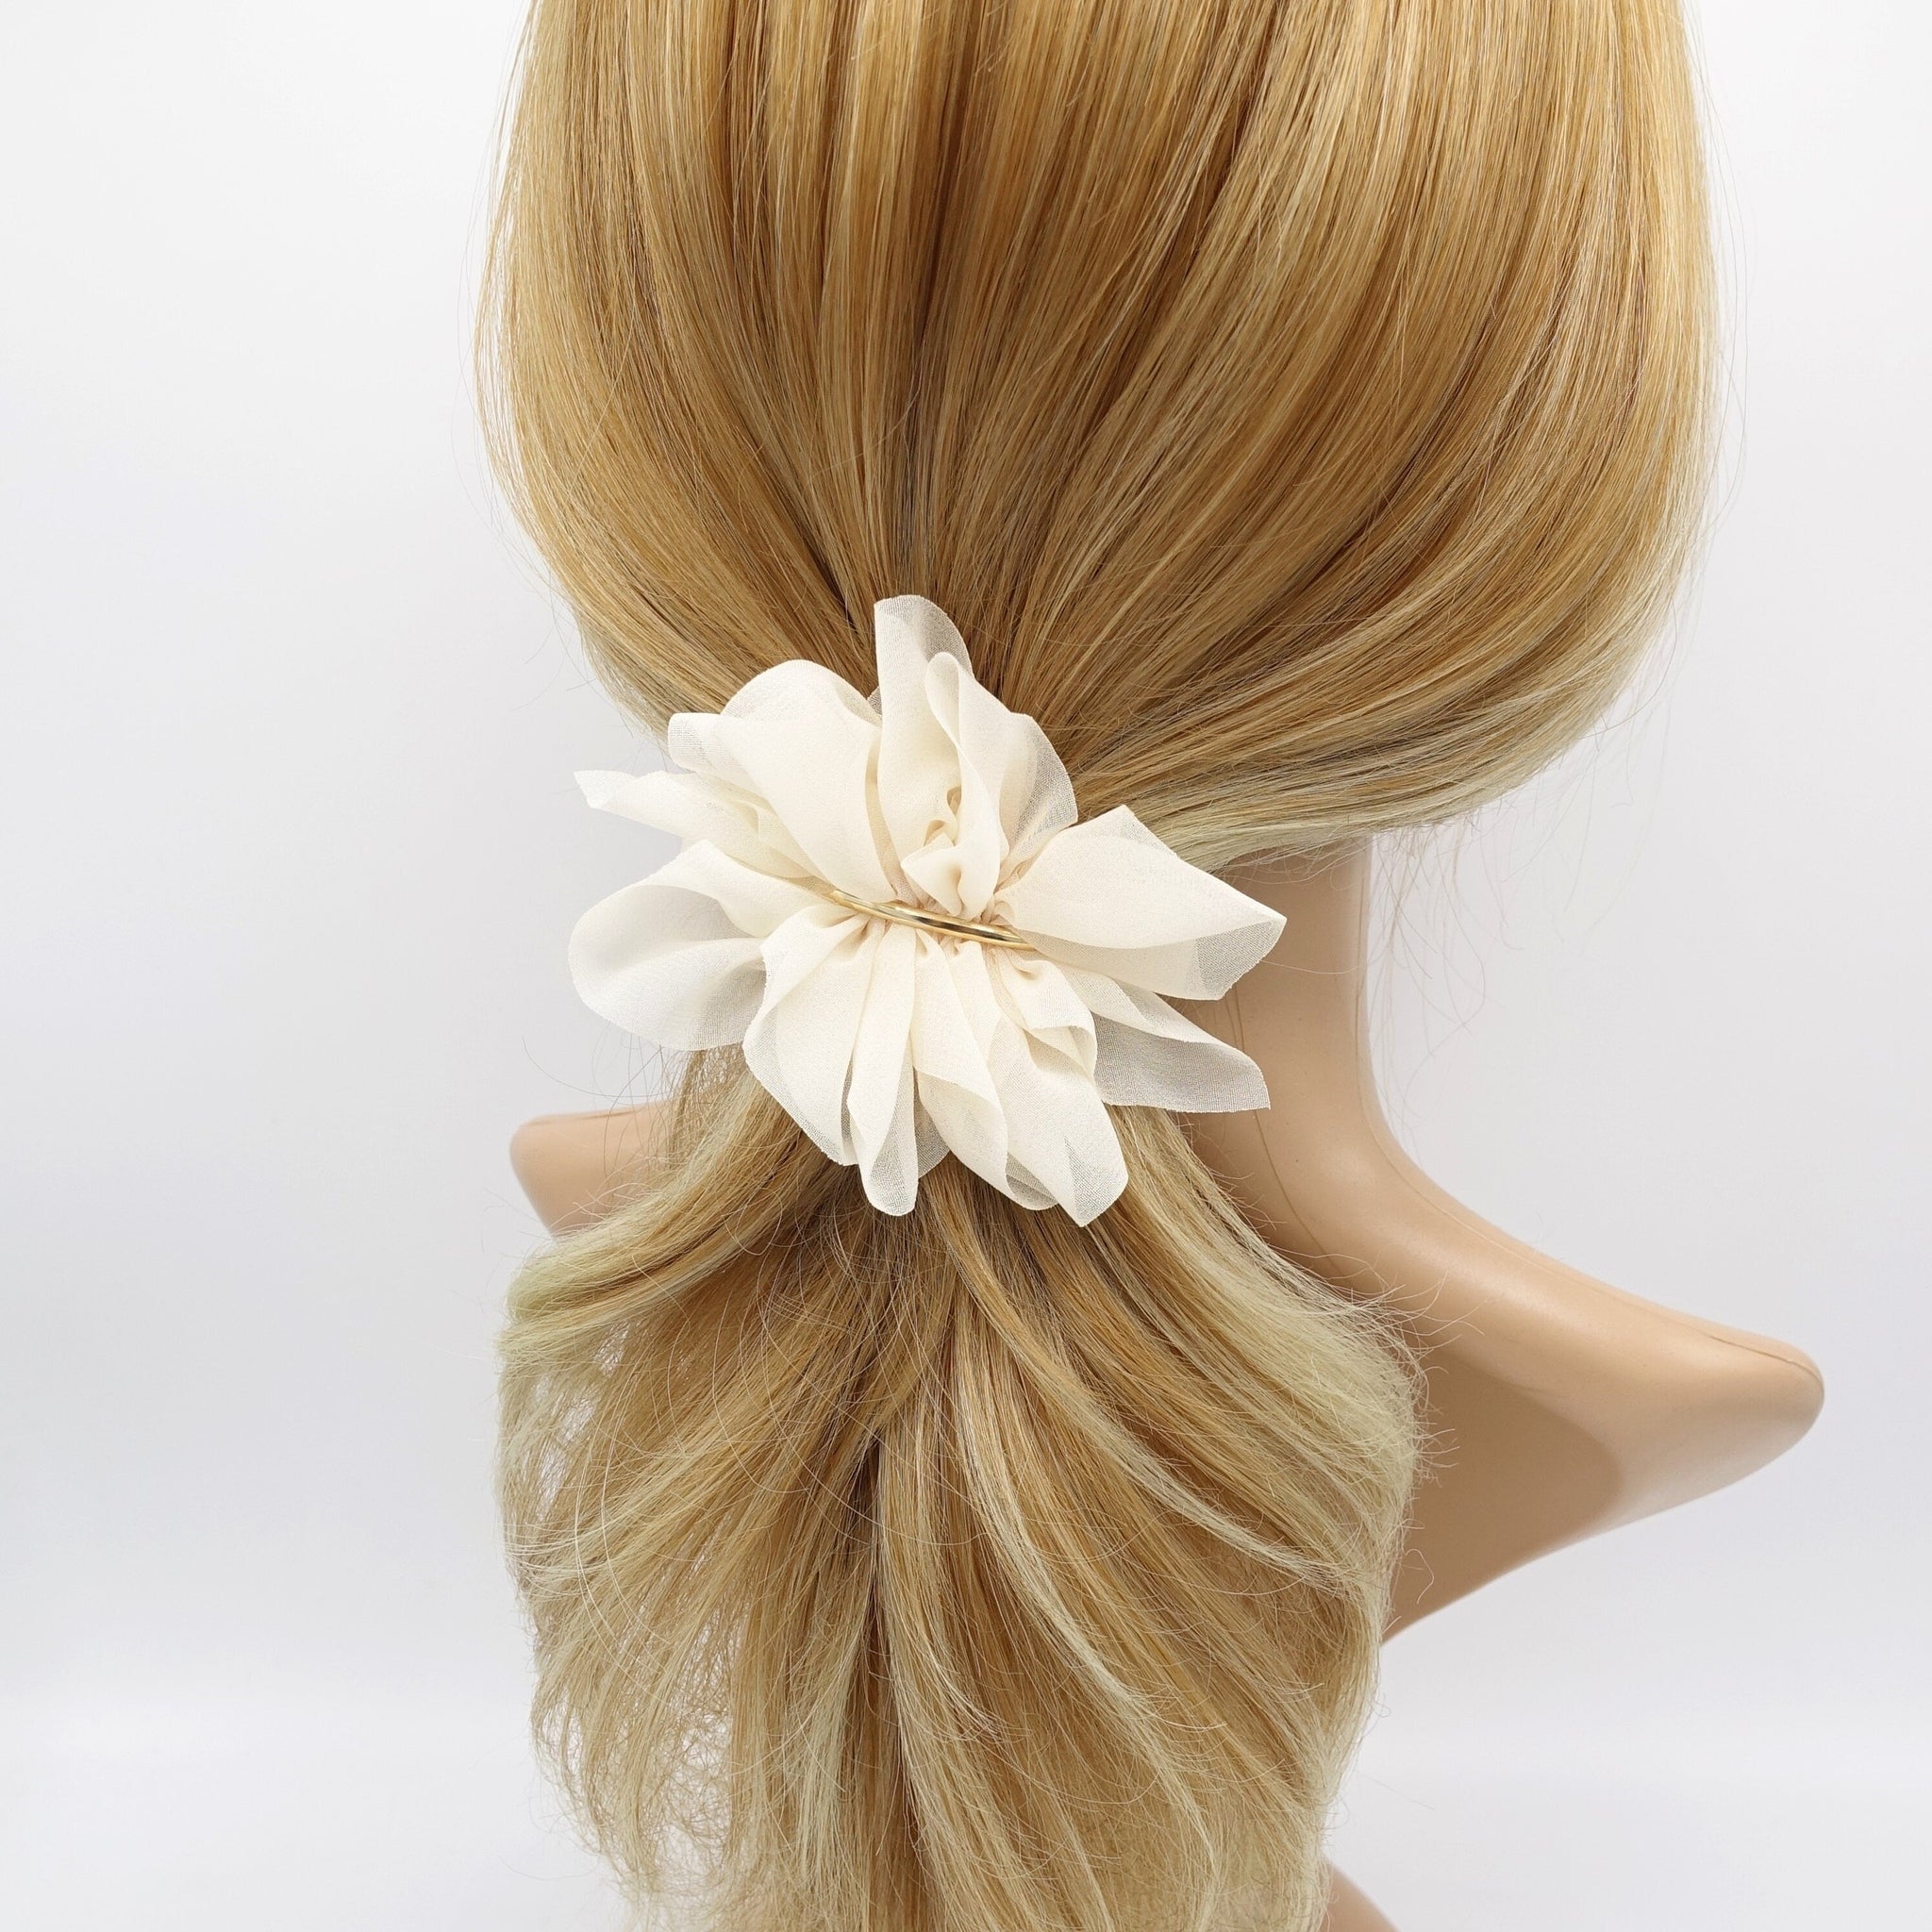 veryshine.com Barrette (Bow) Cream white chiffon flower barrette, ruffle flower barrette, cute hair accessory for women